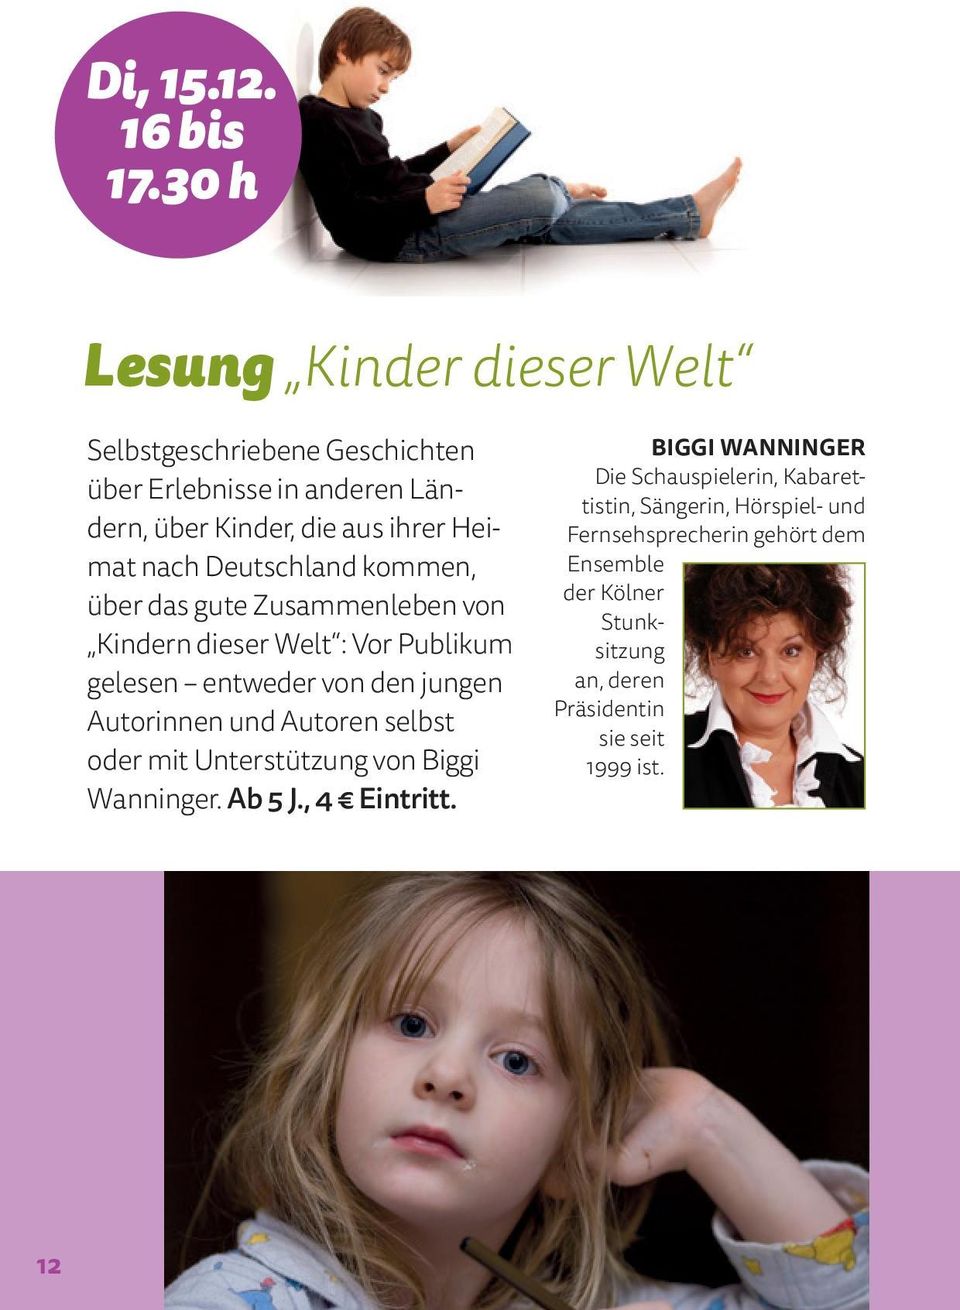 Deutschland kommen, über das gute Zusammenleben von Kindern dieser Welt : Vor Publikum gelesen entweder von den jungen Autorinnen und